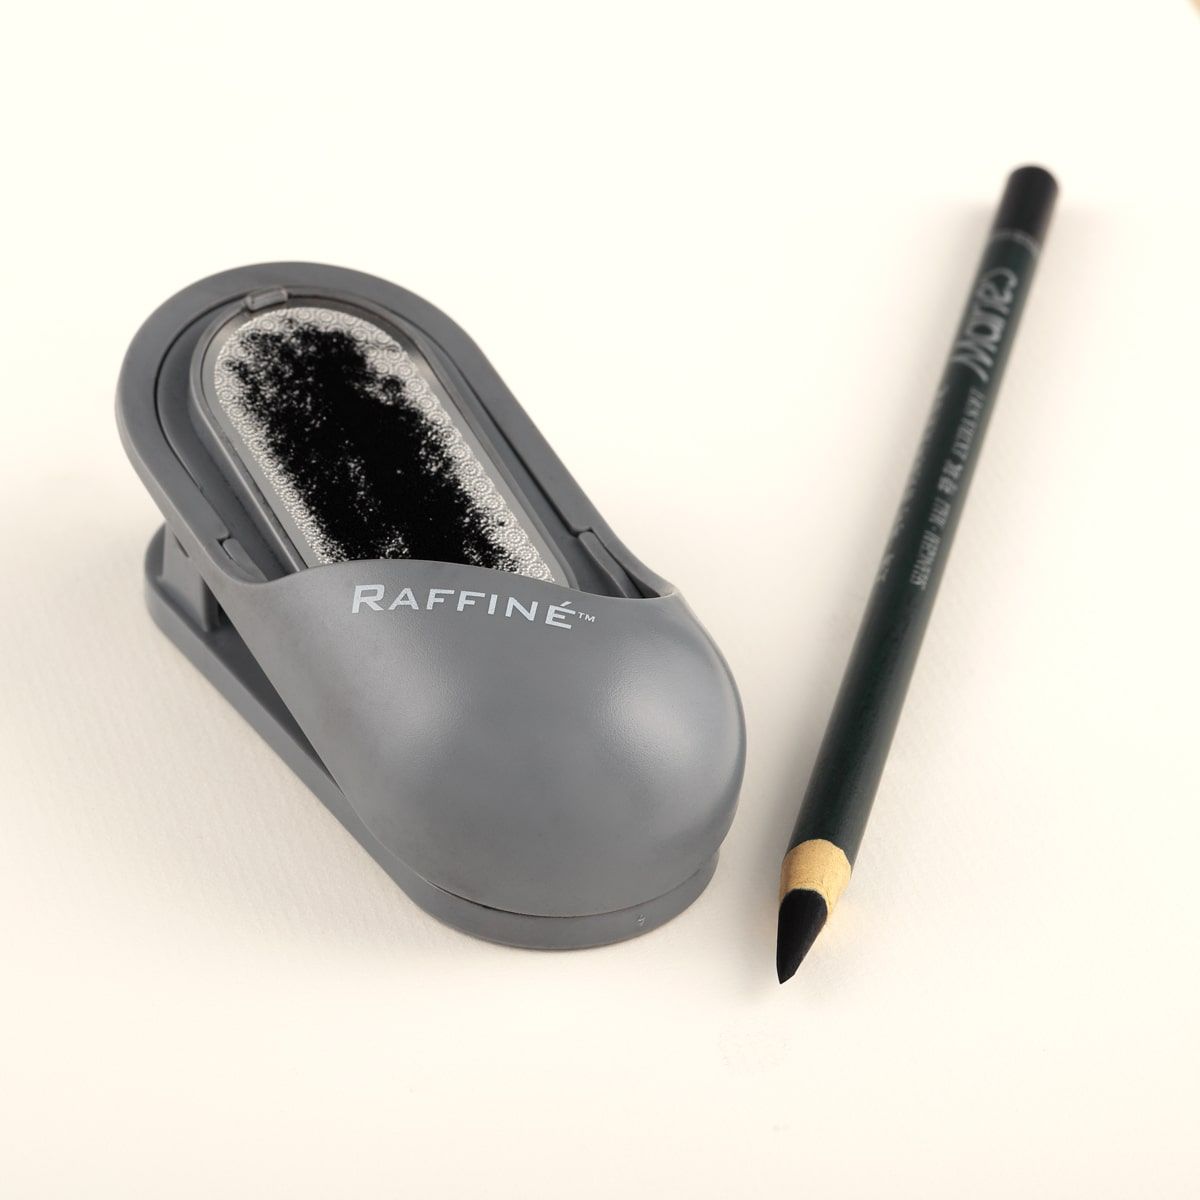 Raffine Pencil & Charcoal Grinder